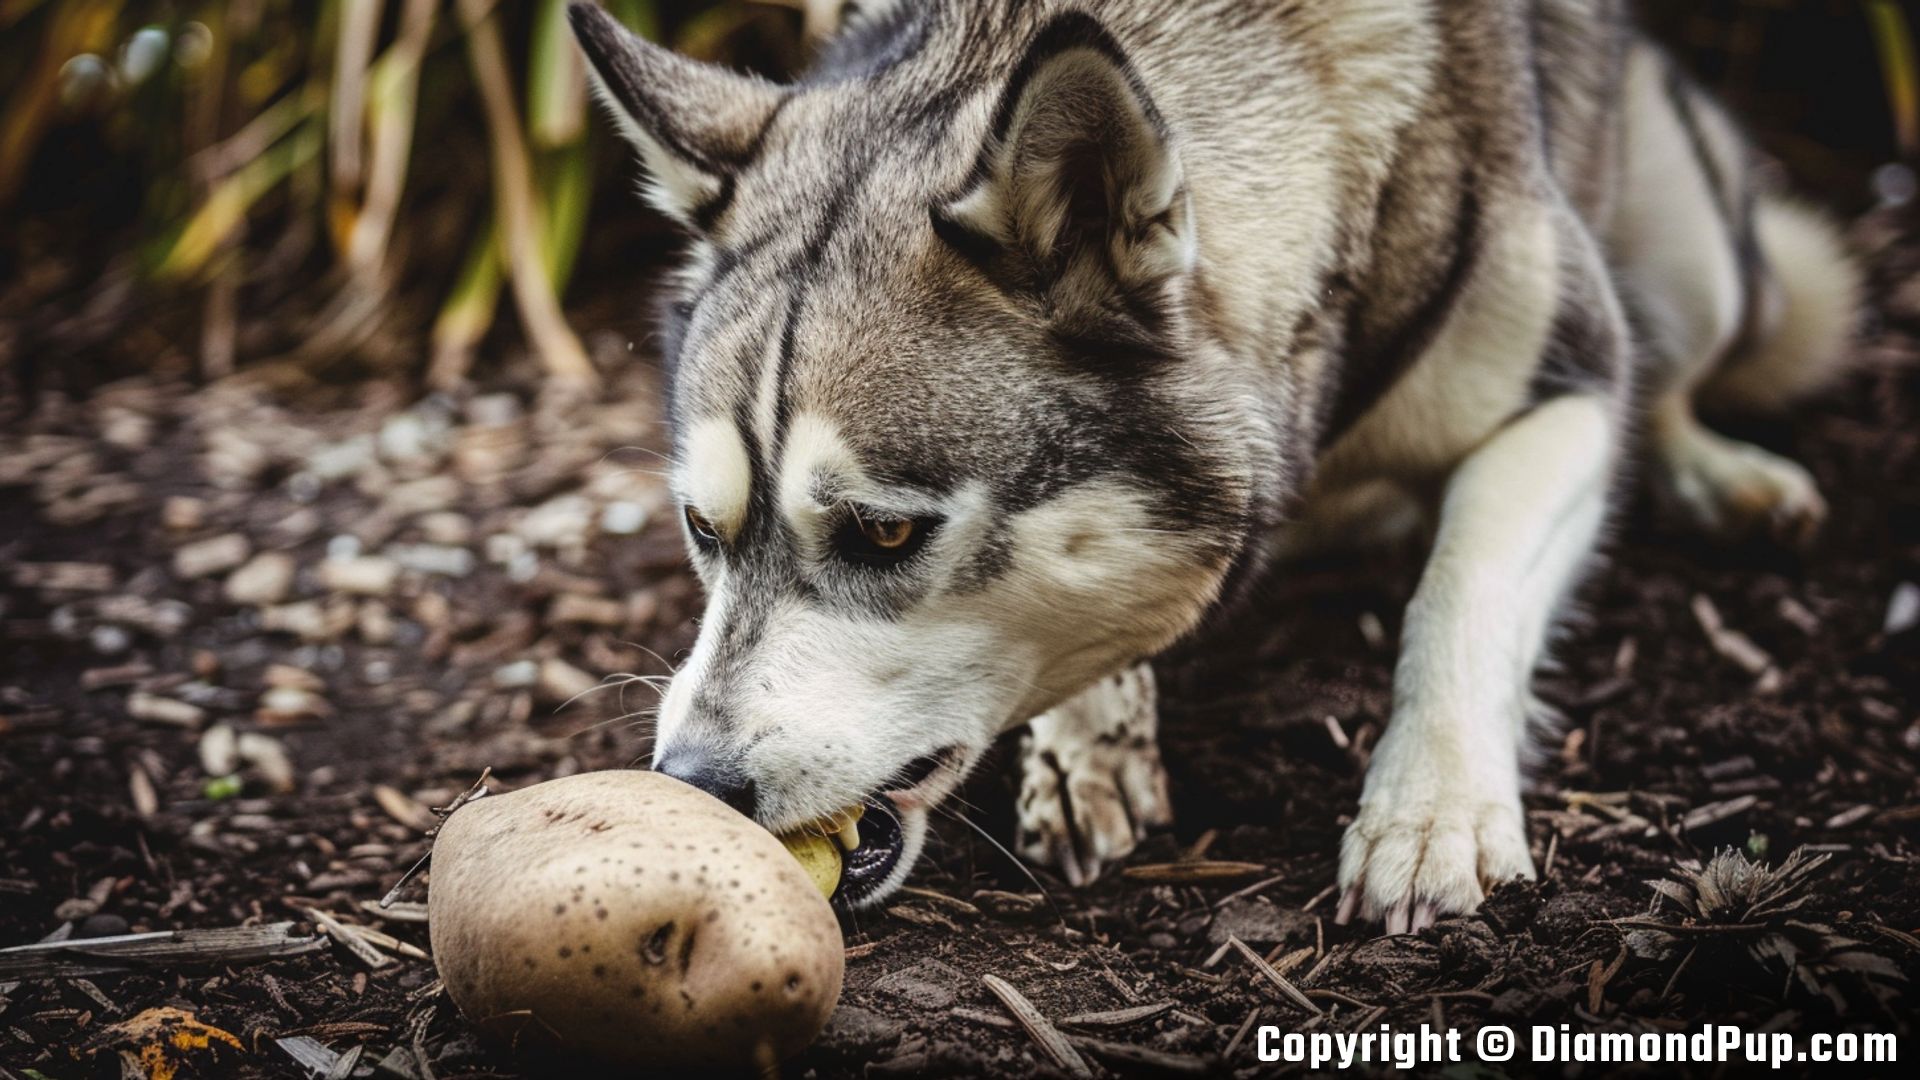 Photograph of an Adorable Husky Eating Potato